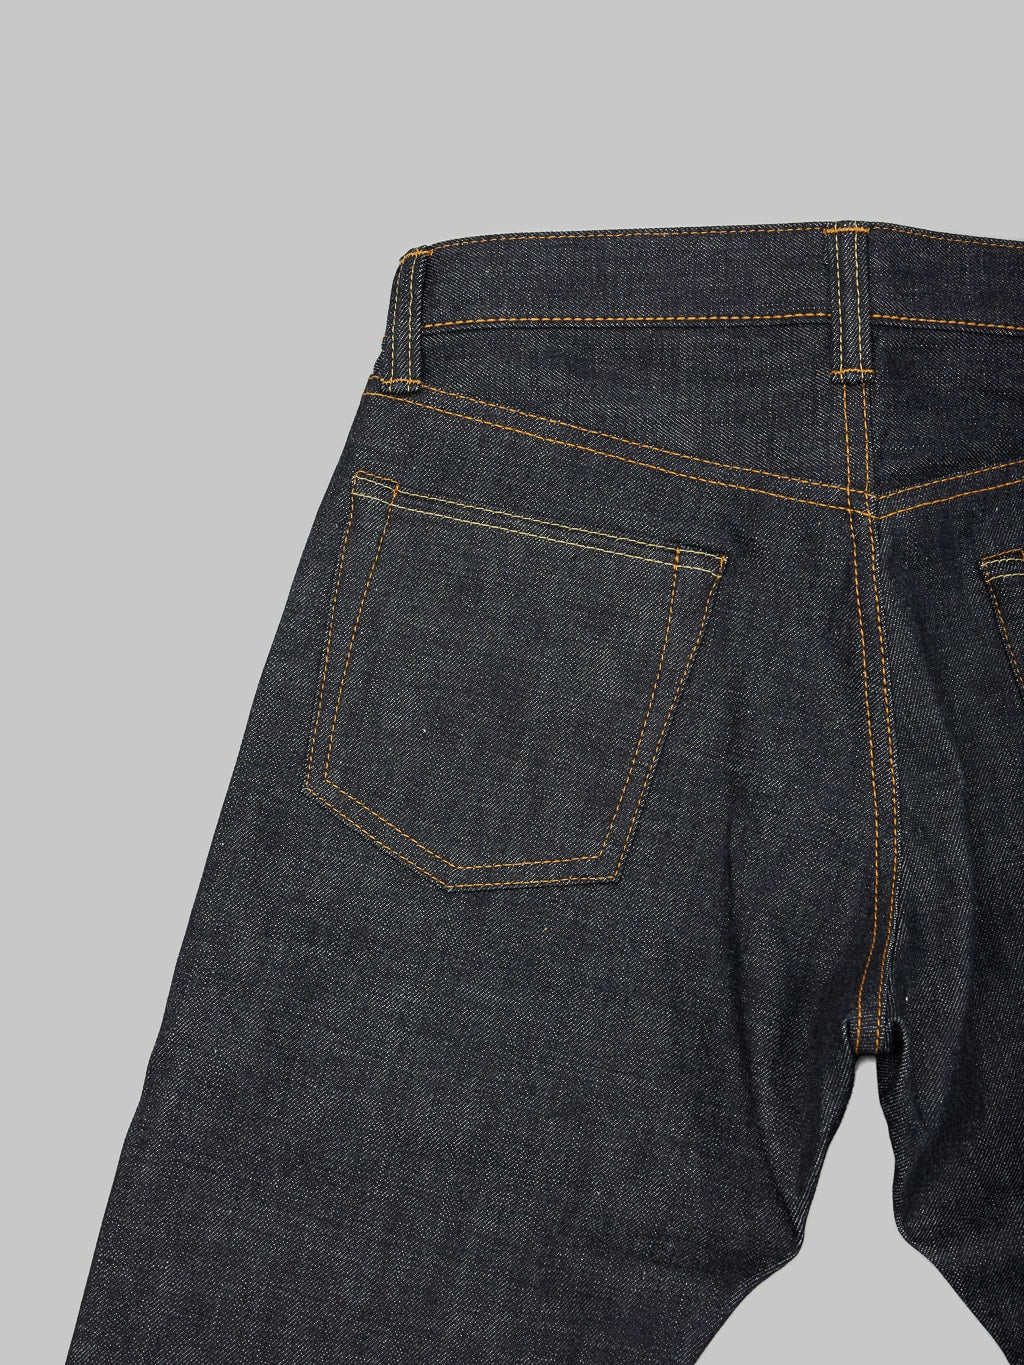 Momotaro 0306 V Tight Tapered Jeans back pocket